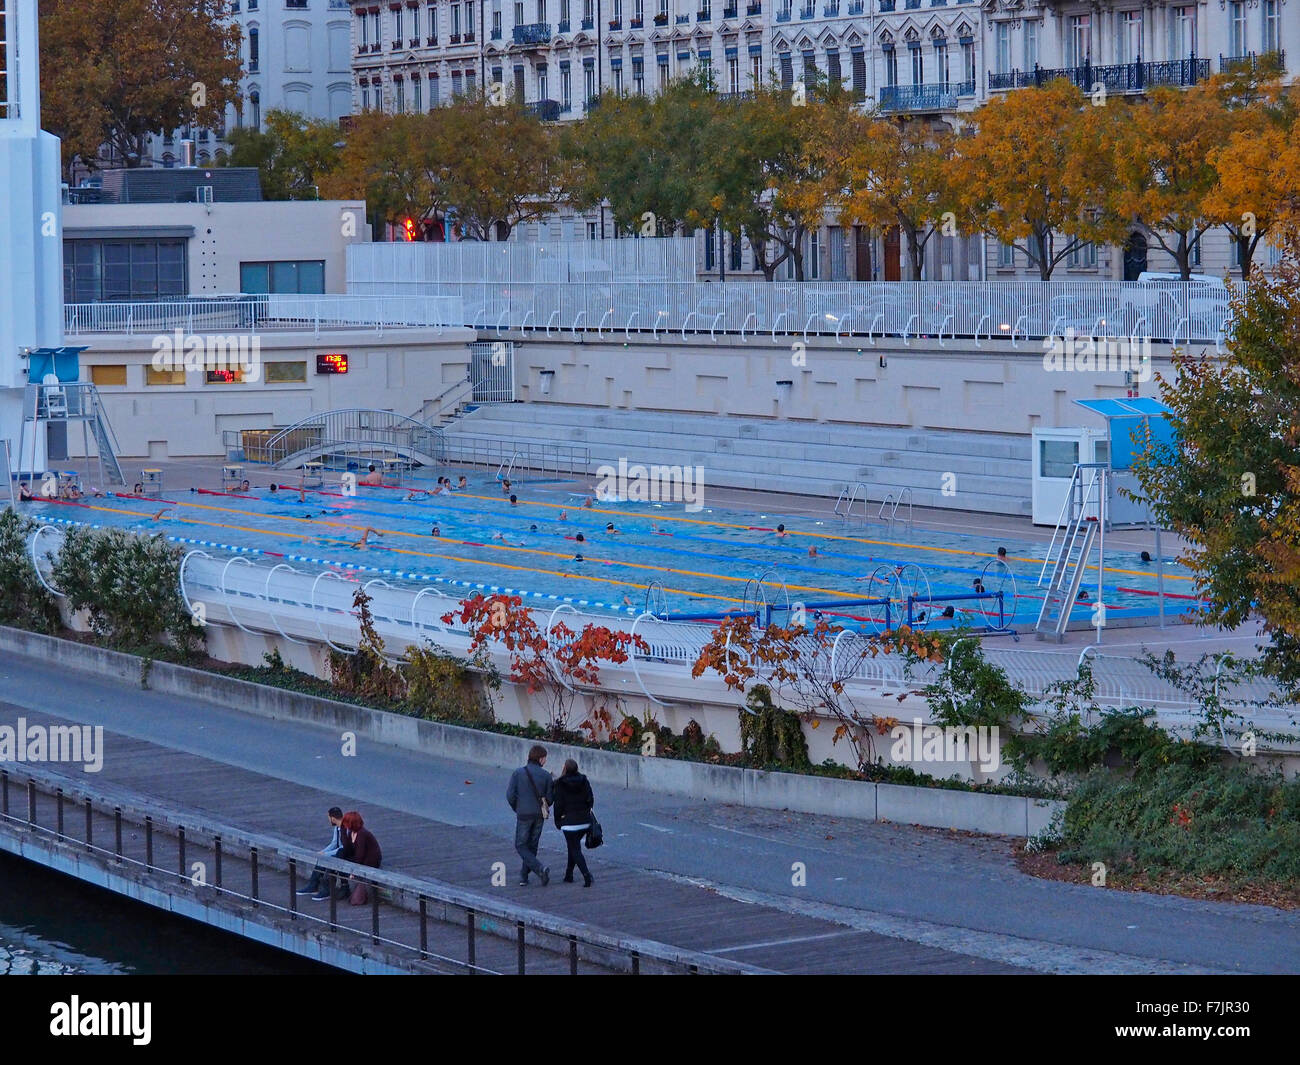 Olympischen Swimmingpool auf der Rhone in Lyon Frankreich Stockfoto